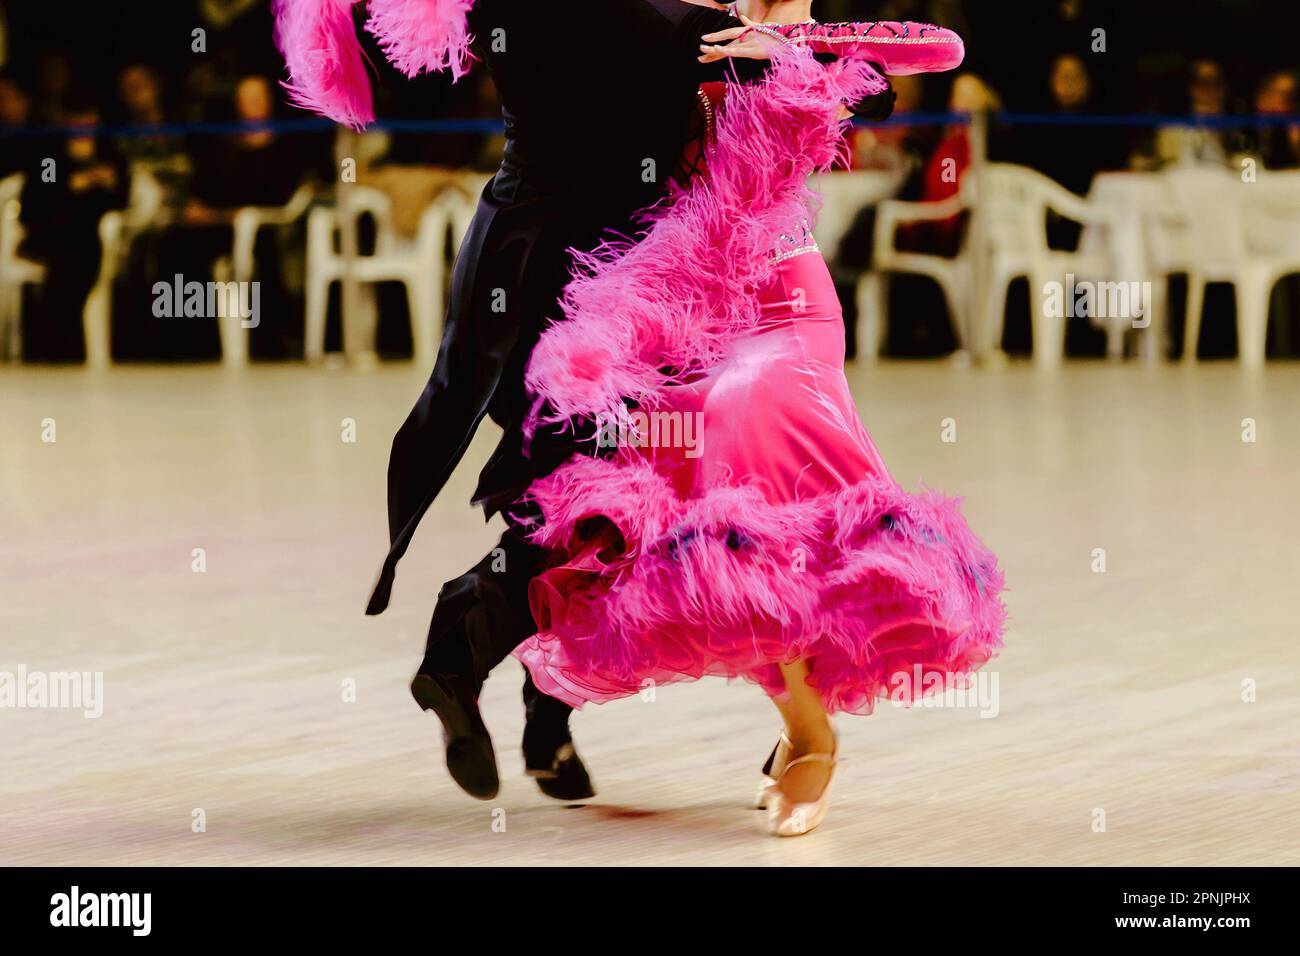 Ein Paar tanzt Foxtrott im Turnierball, die Frau trägt ein rosa Kleid und einen schwarzen Schwanzanzug Stockfoto